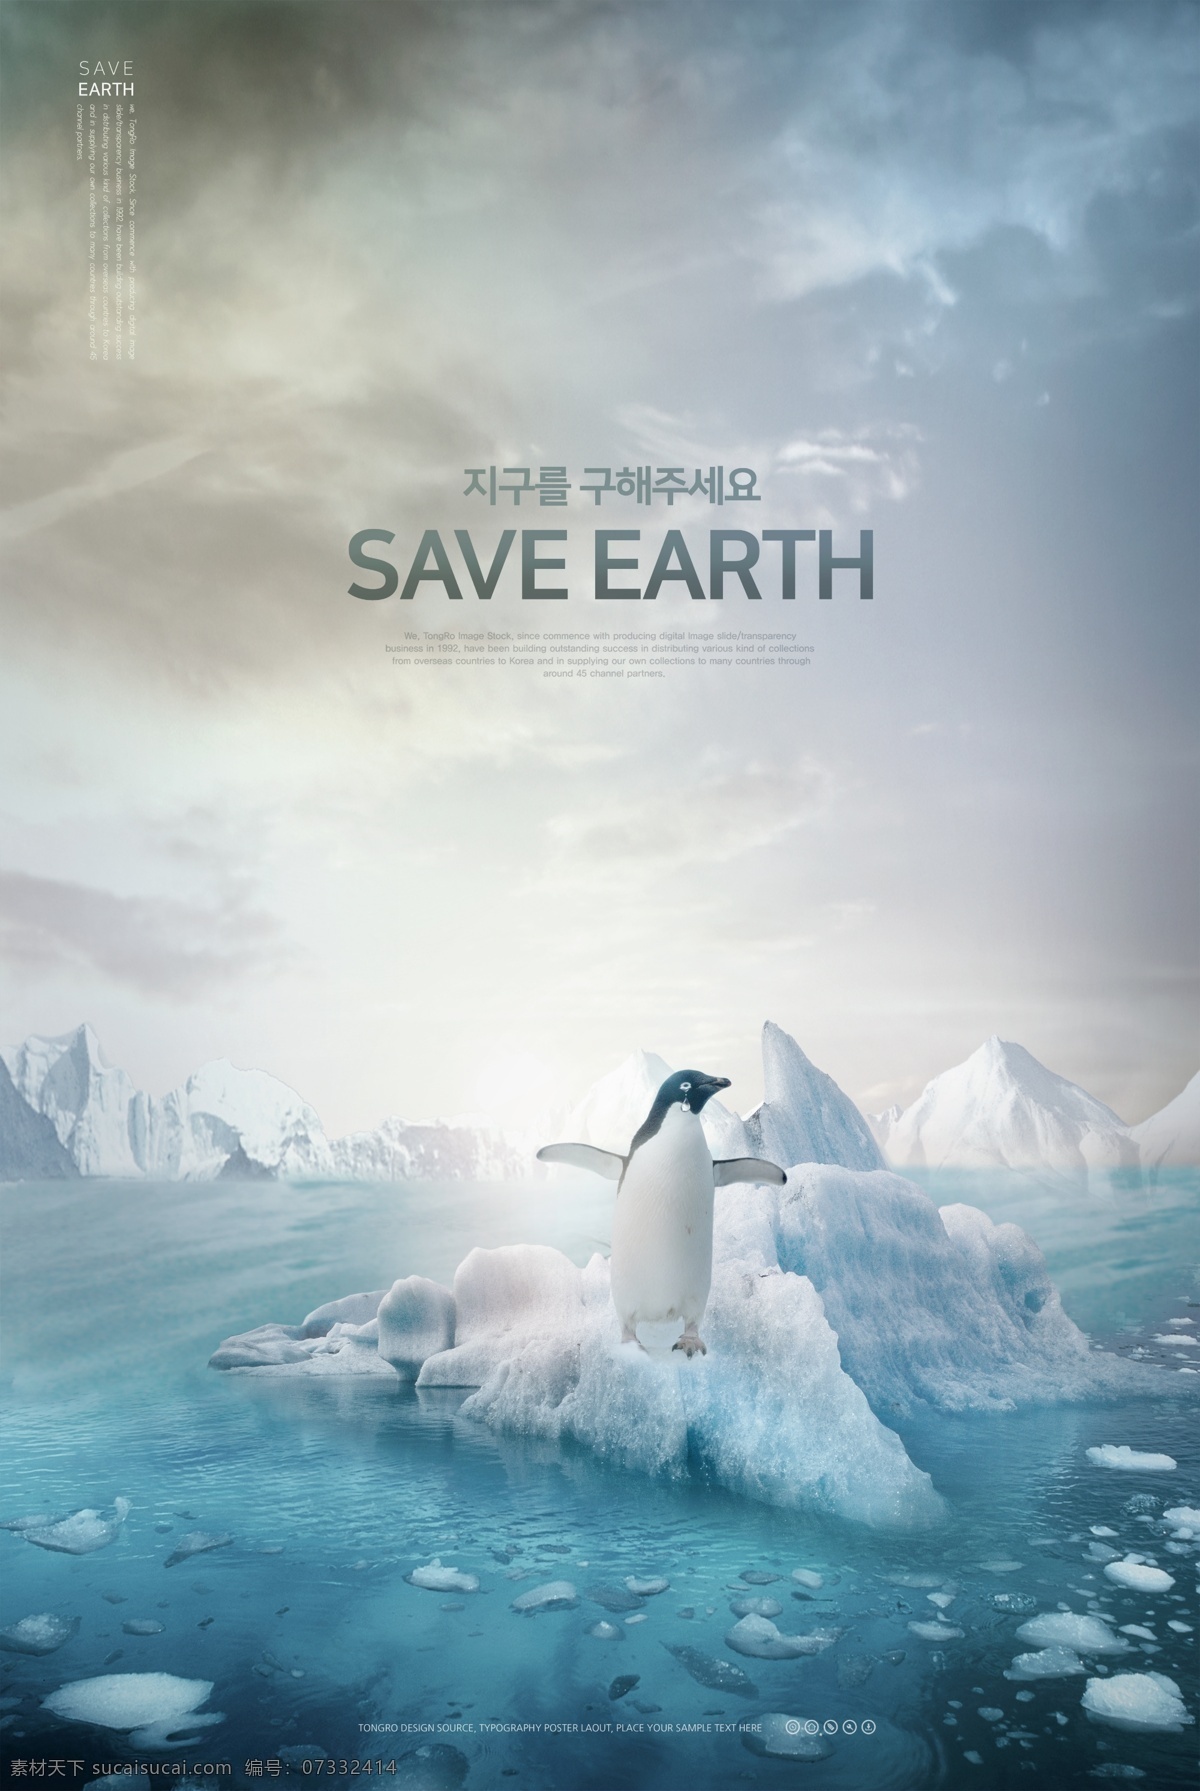 冰川融化 海底世界 环保 海报 地球 生物 鱼类 蓝色 保护地球 气泡 双手 草原 冰川 北极 企鹅